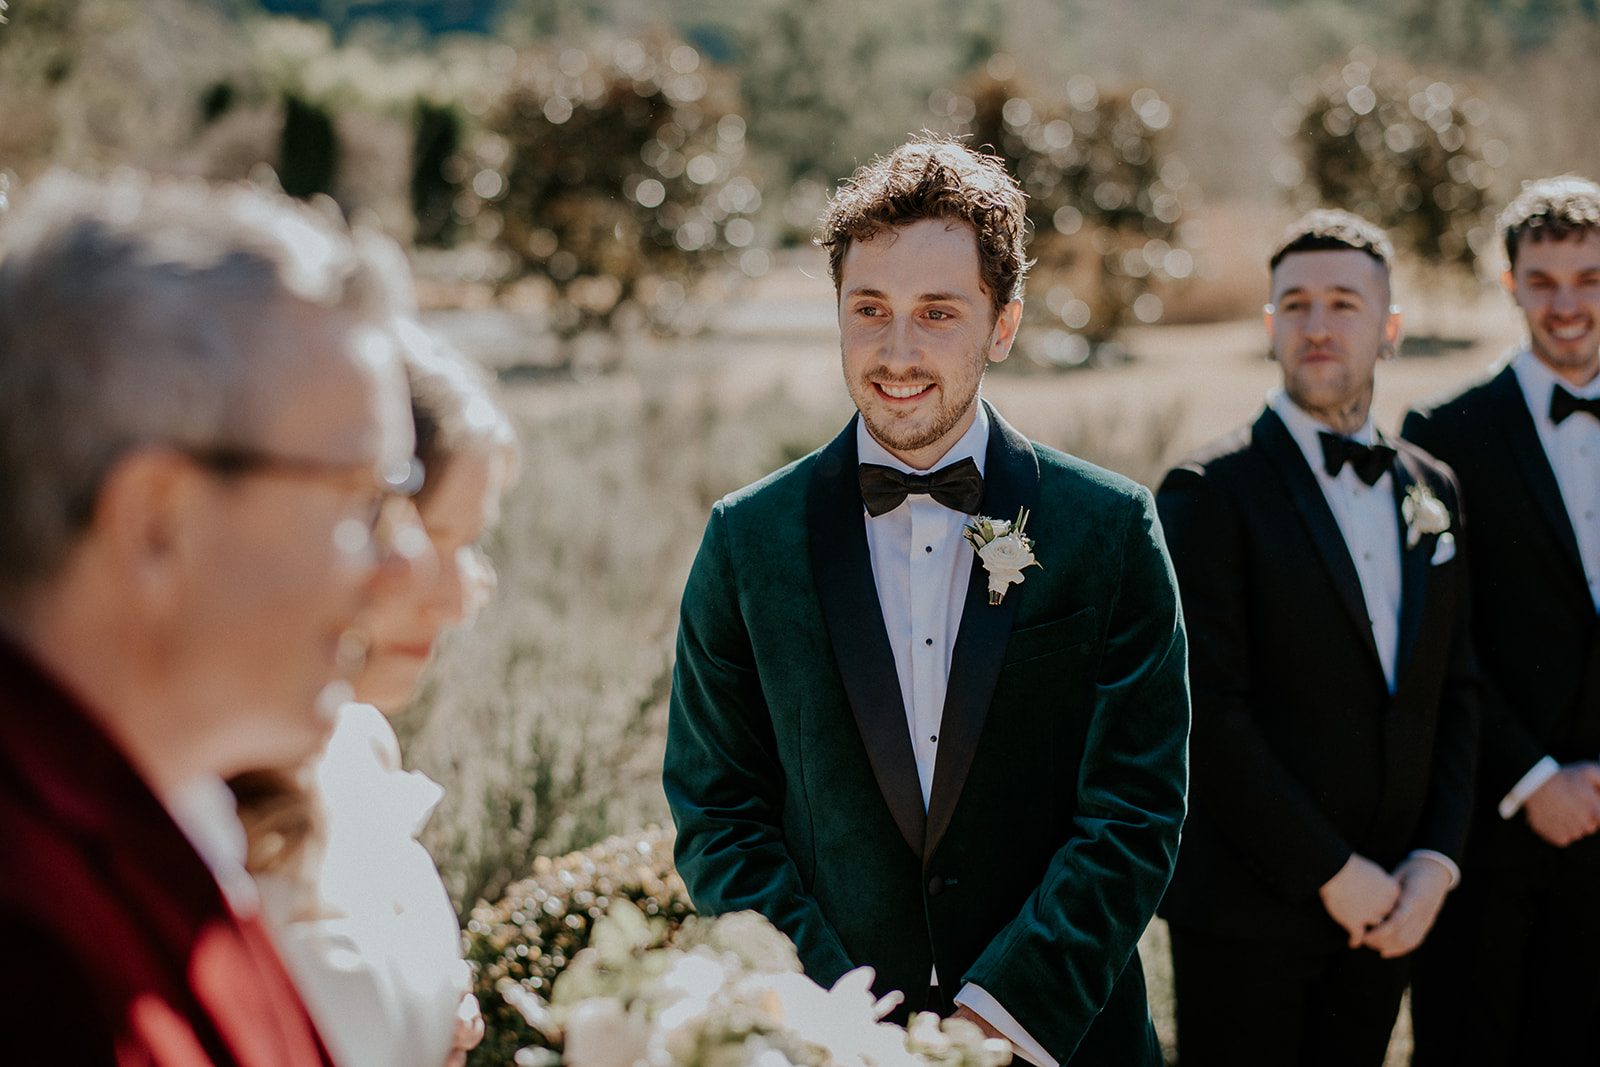 Redleaf wedding groom lays eyes on bride during reception